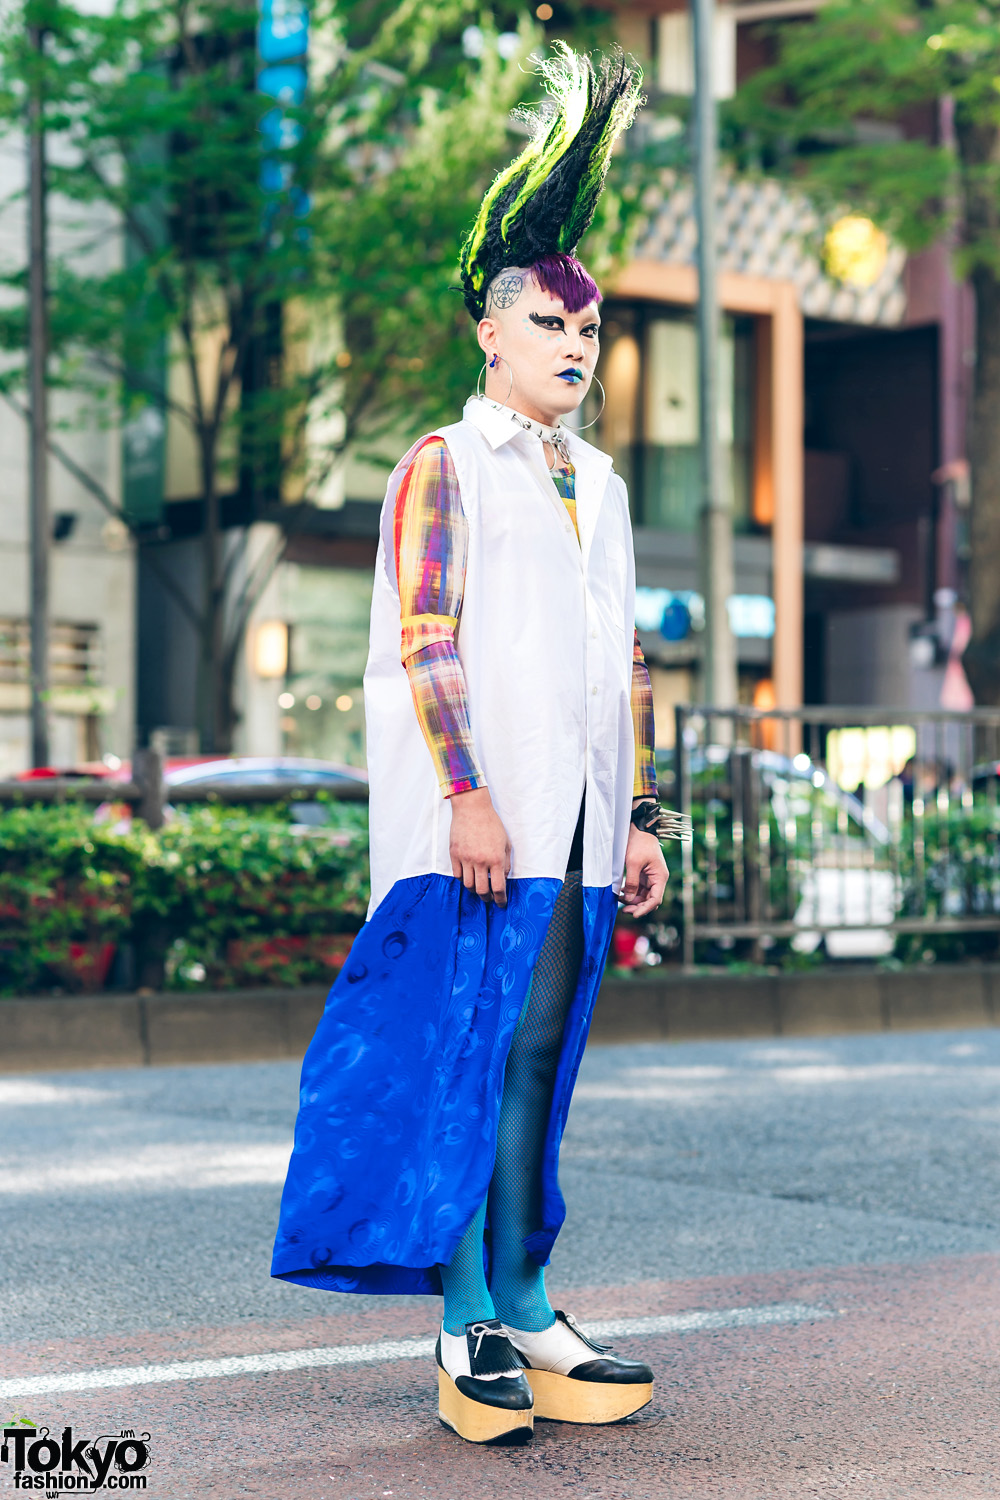 Mohawk Hairstyle in Harajuku w/ Sleeveless Dress, Heiligtum Sweatshirt, Fishnets & Vivienne Westwood Rocking Horse Shoes